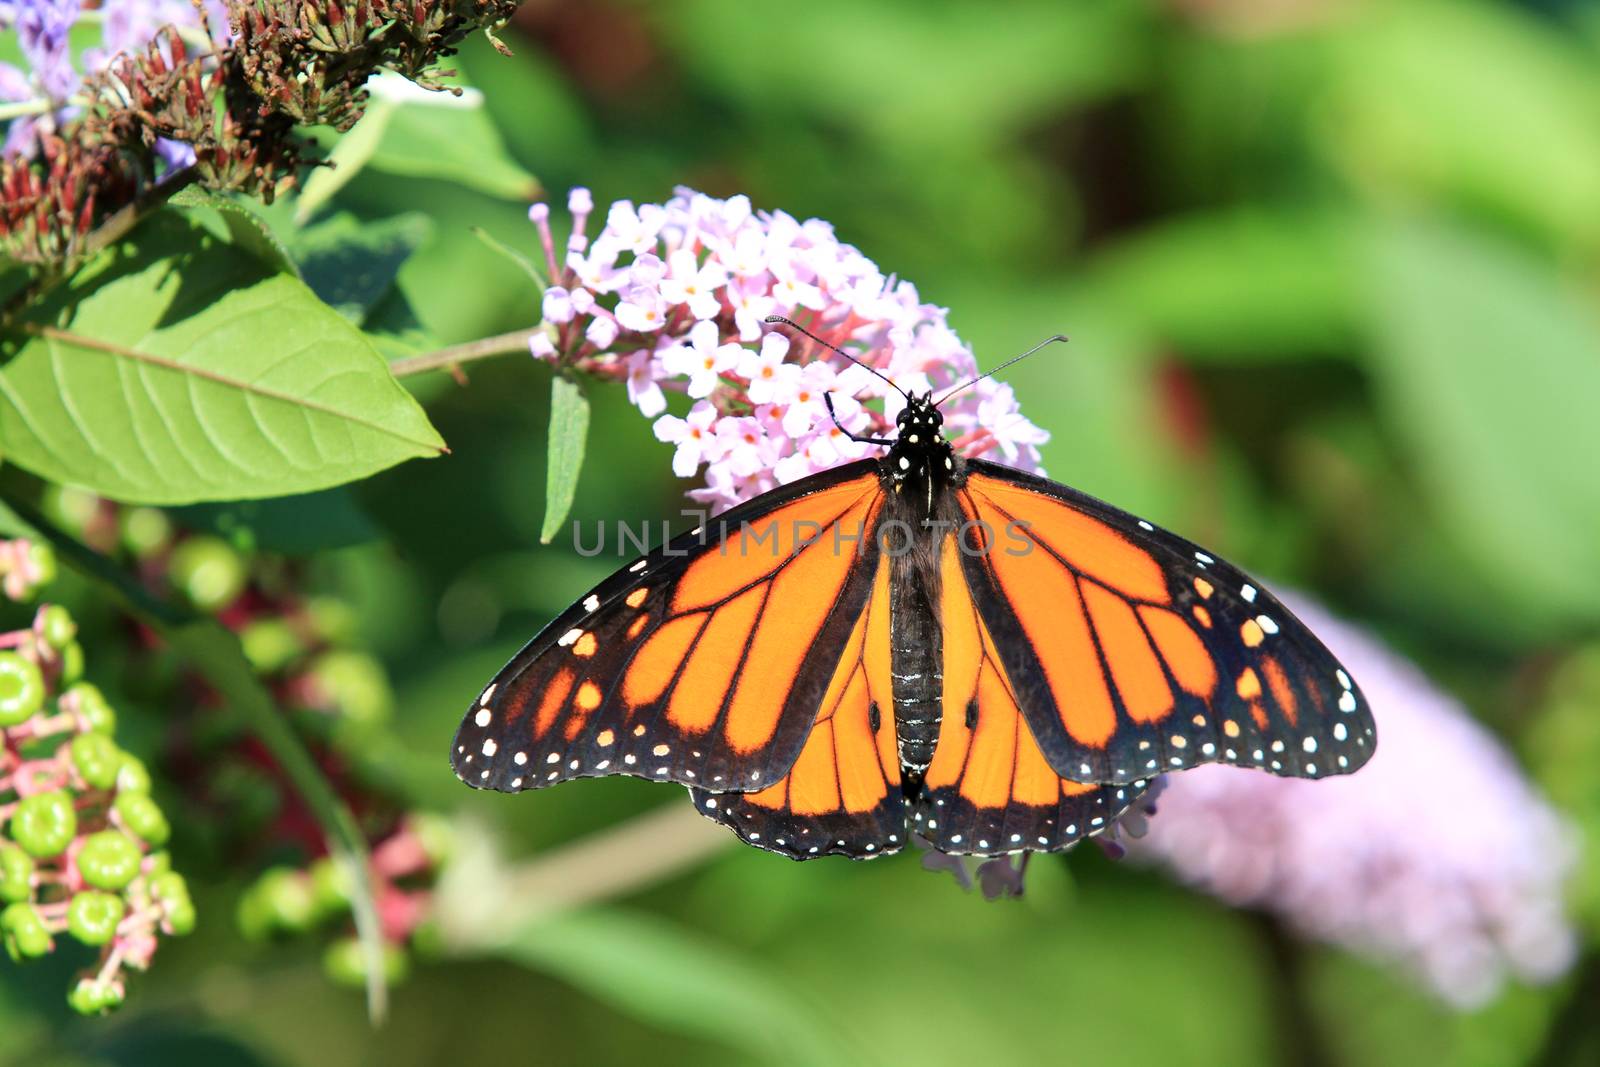 Monarch butterfly on butterfly bush flower morning light